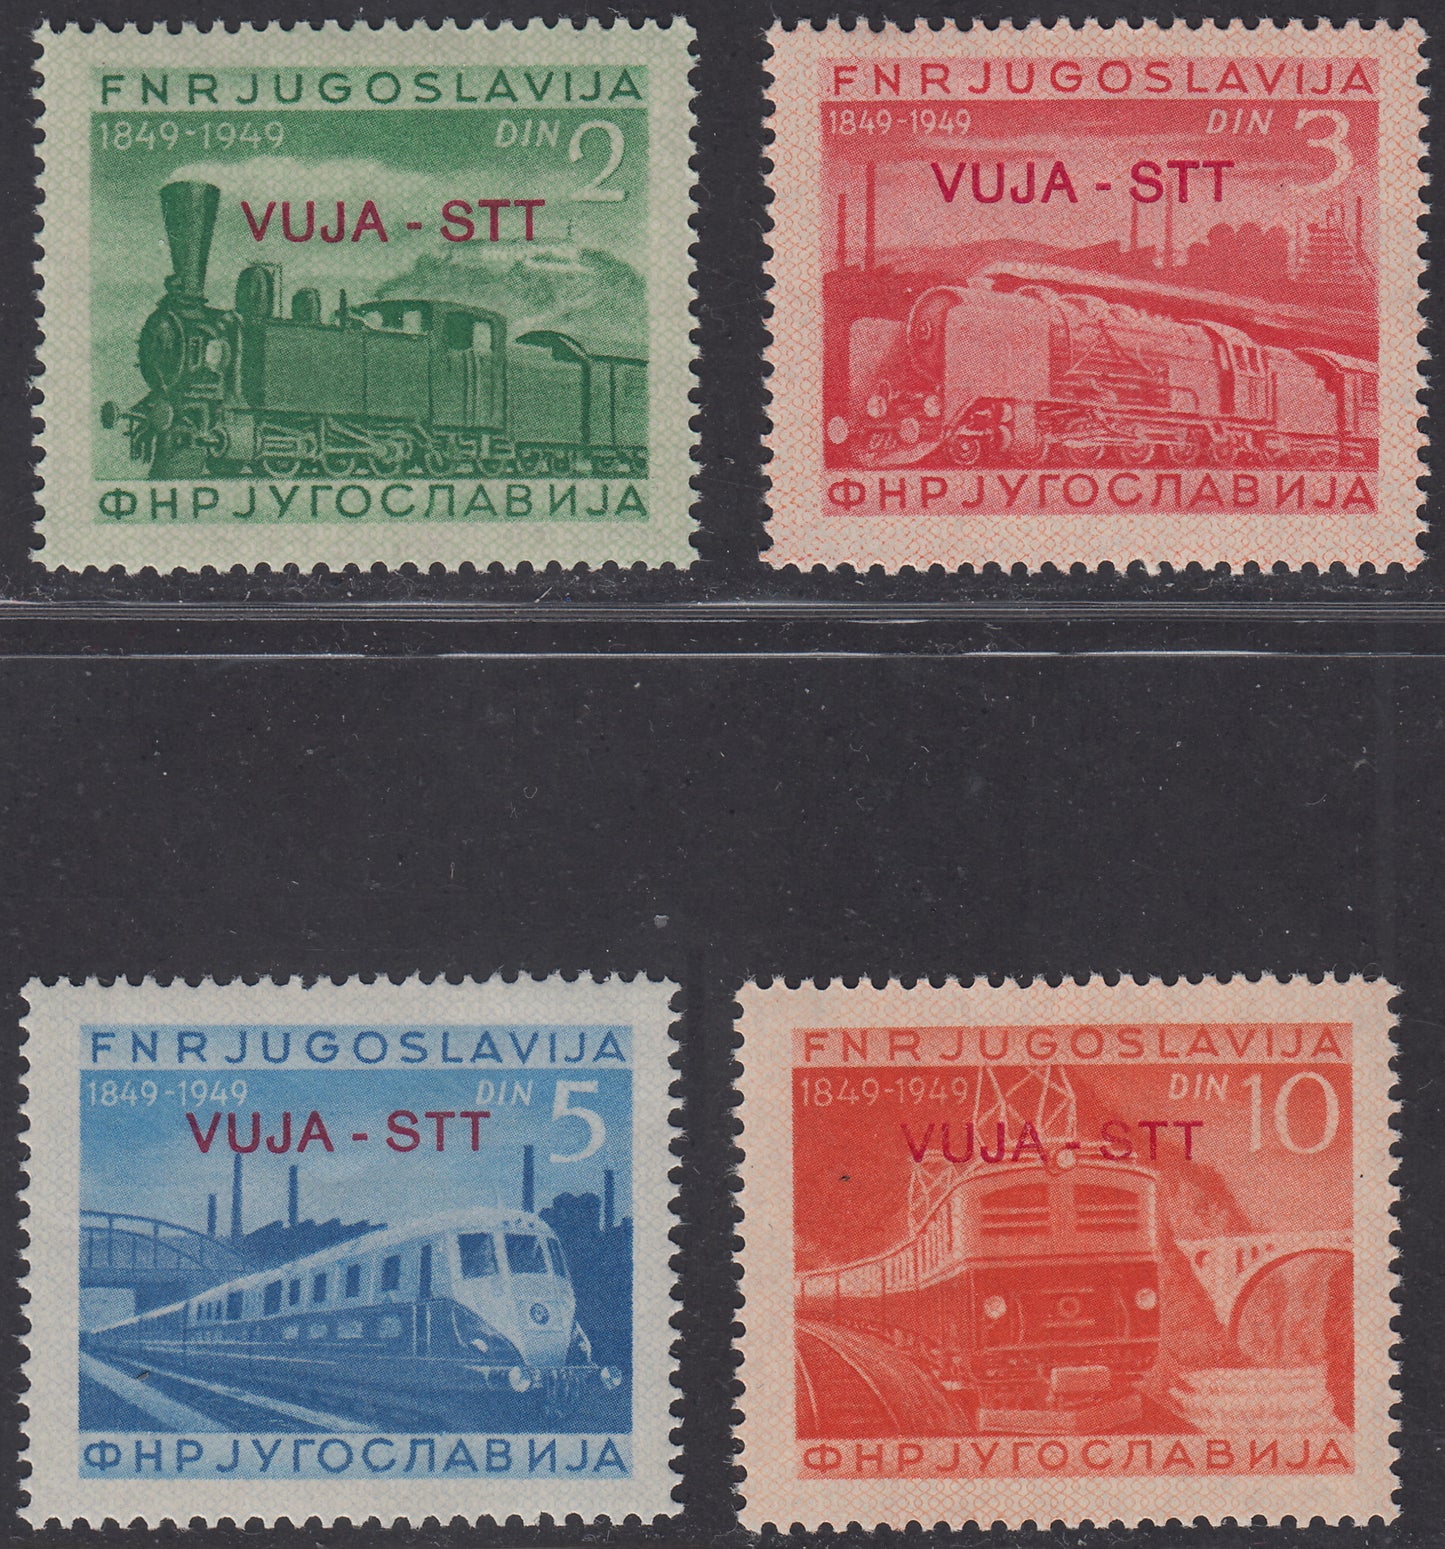 1950 - Centenario delle Ferrovie Jugoslave, serie di 4 valori nuova gomma integra (19/22)